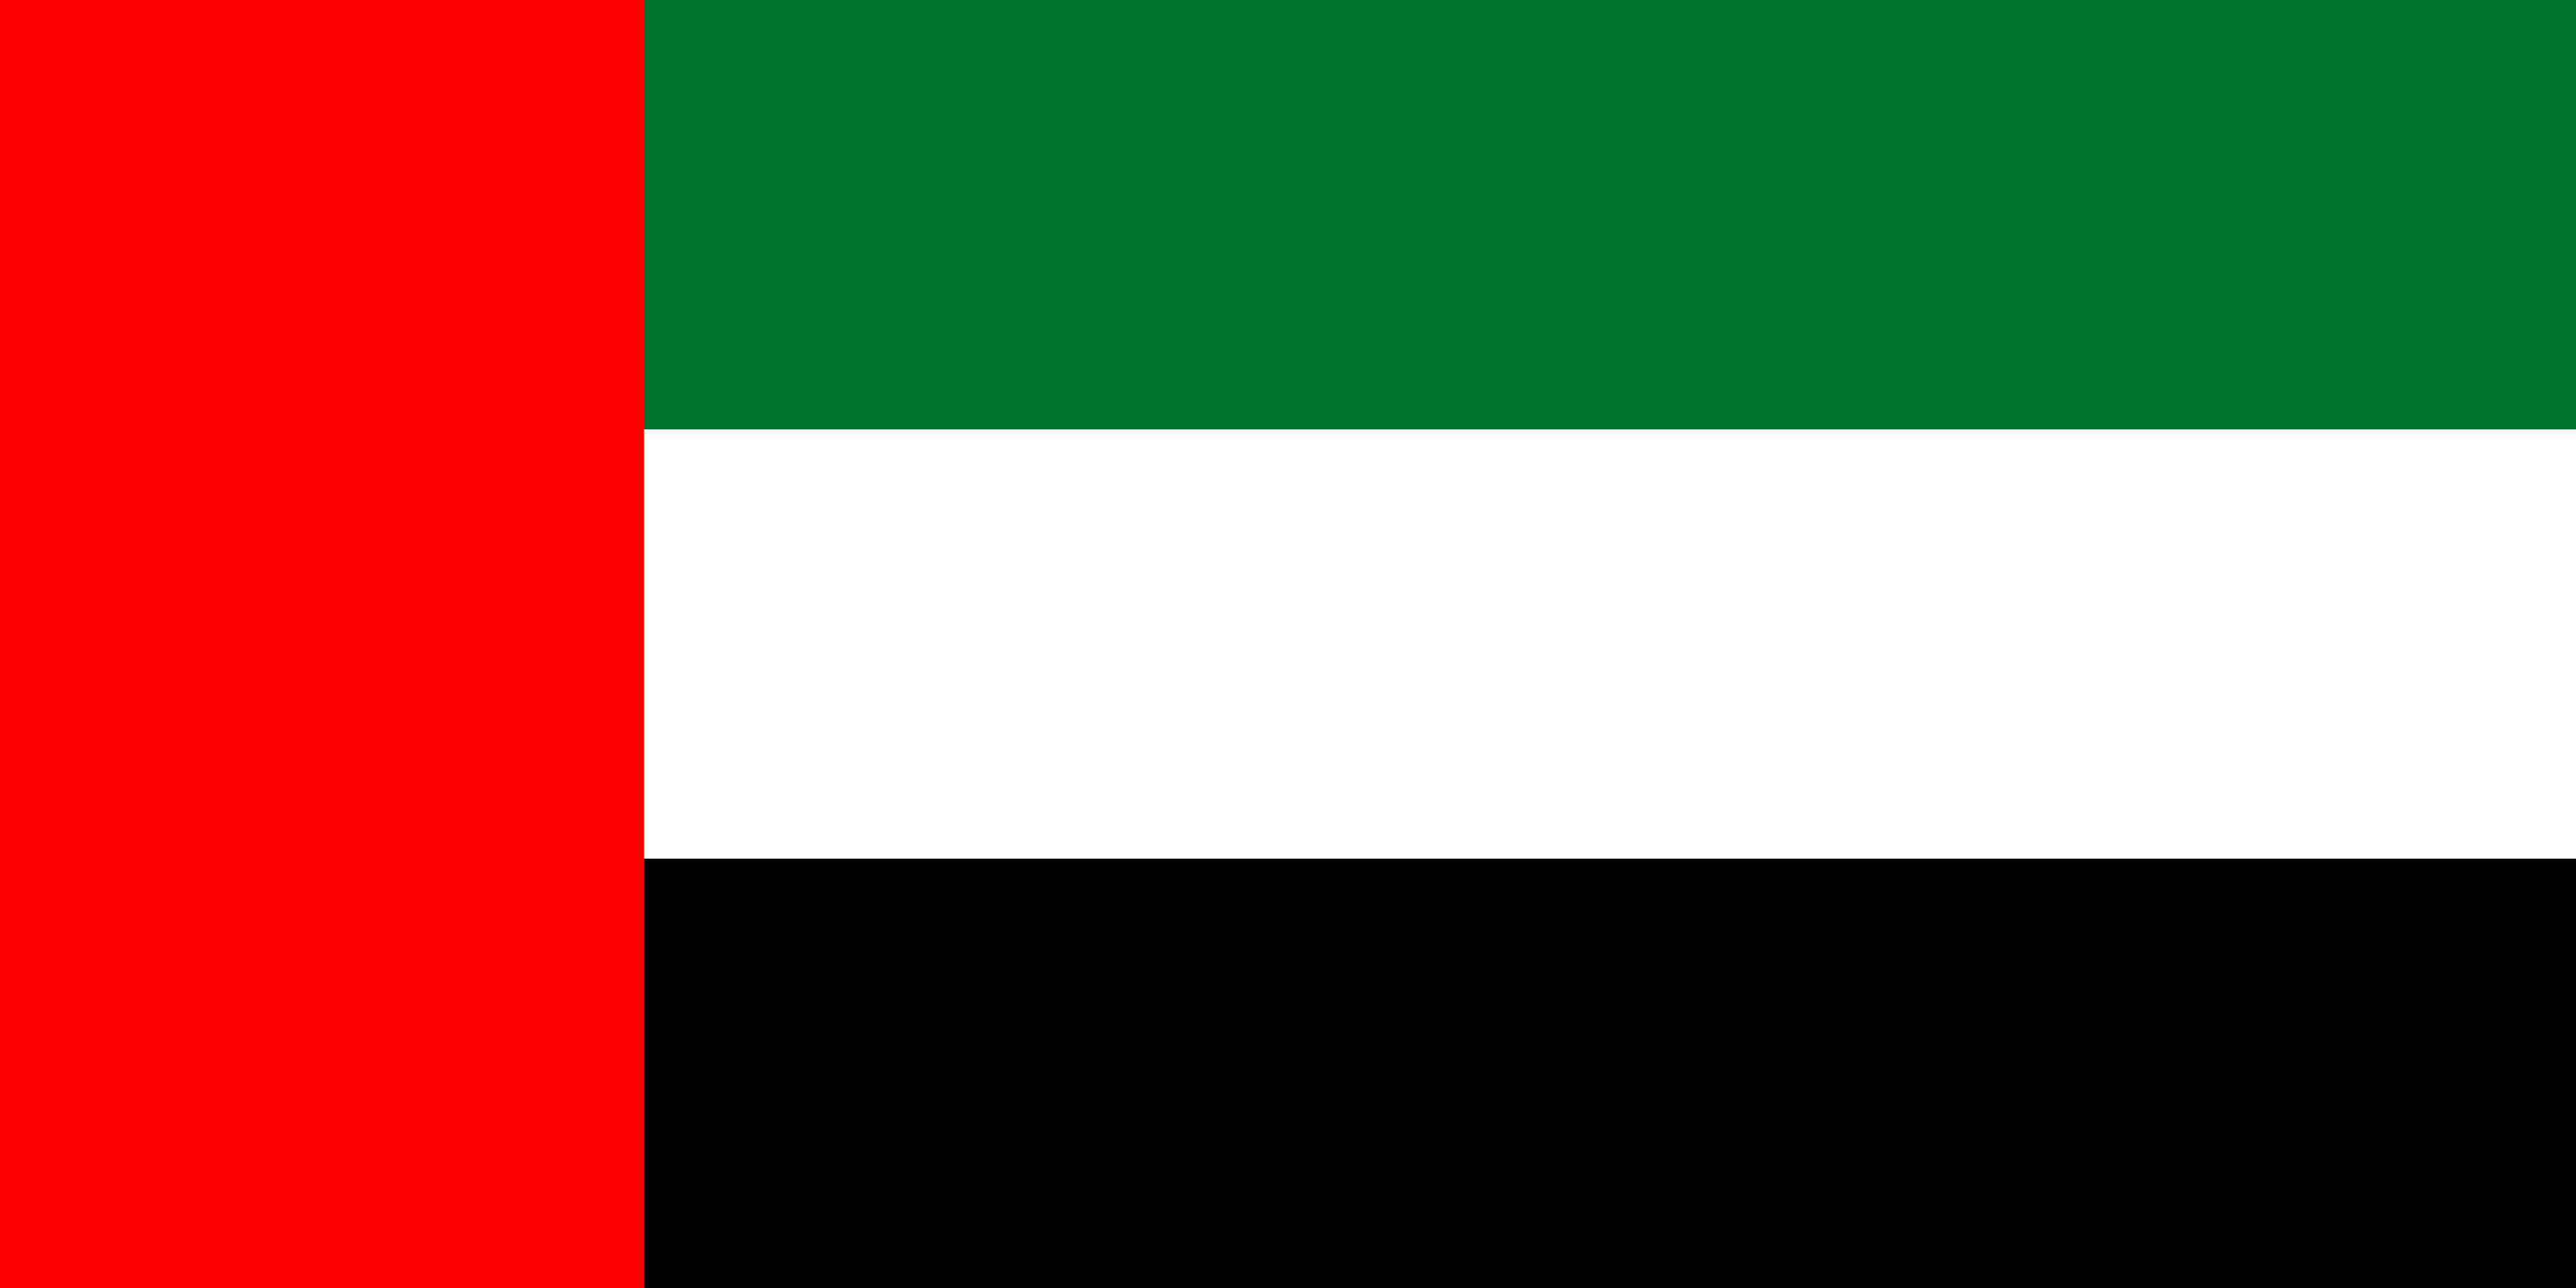 Free United Arab Emirates Flag Documents: PDF, DOC, DOCX, HTML & More!